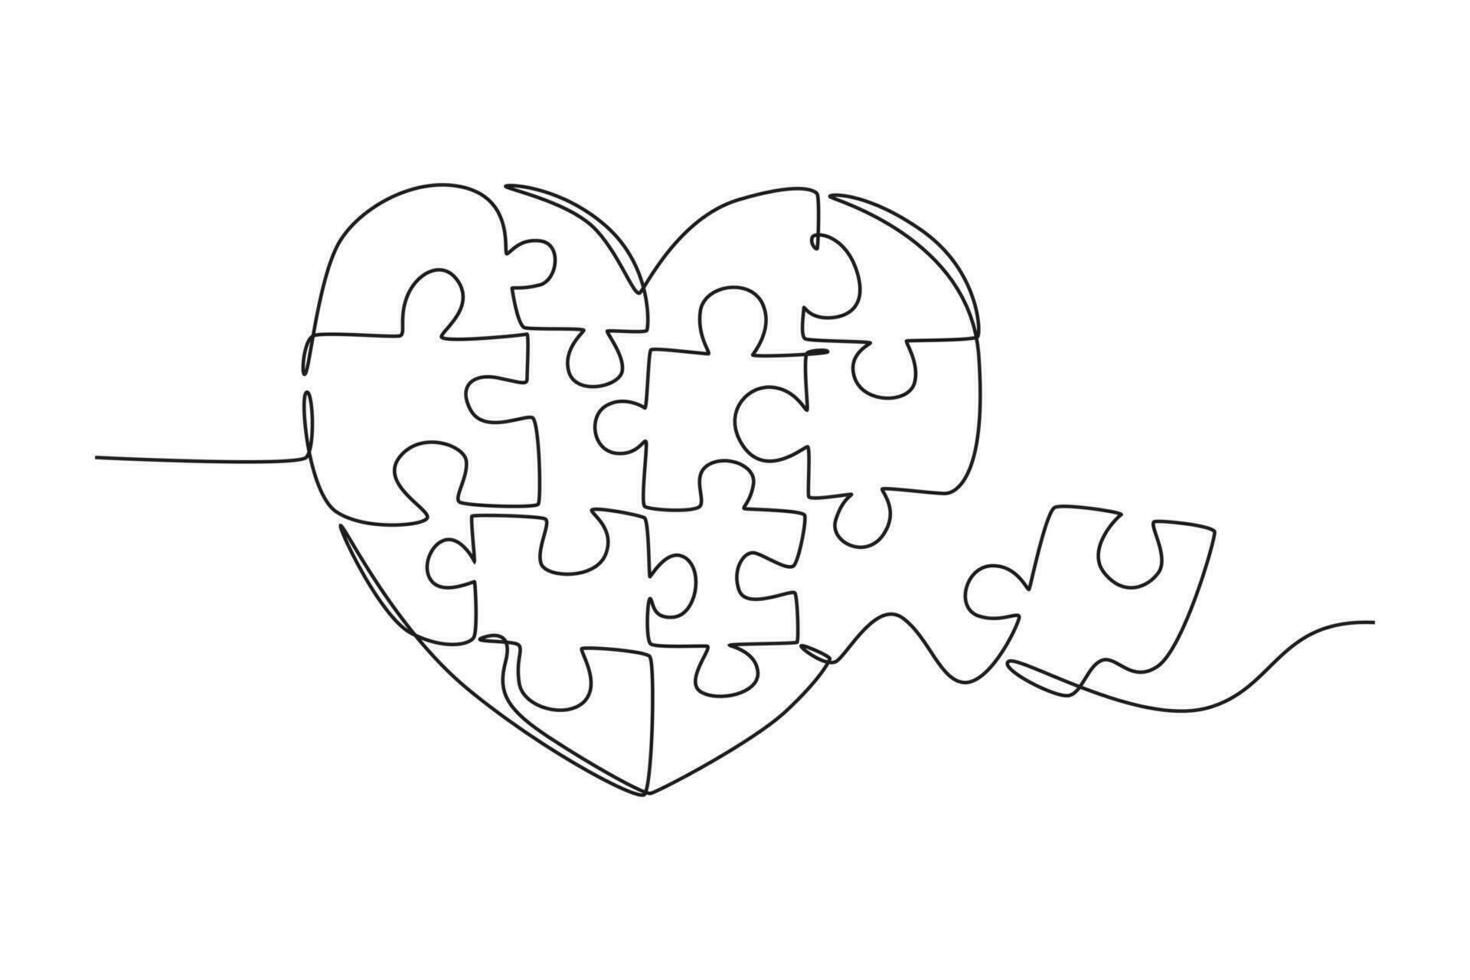 Single einer Linie Zeichnung einstellen Puzzle Stücke stellen es zusammen zu süß Herz gestalten bilden Symbol. romantisch Ehe Liebe Beziehung Konzept. modern kontinuierlich Linie zeichnen Design Grafik Vektor Illustration